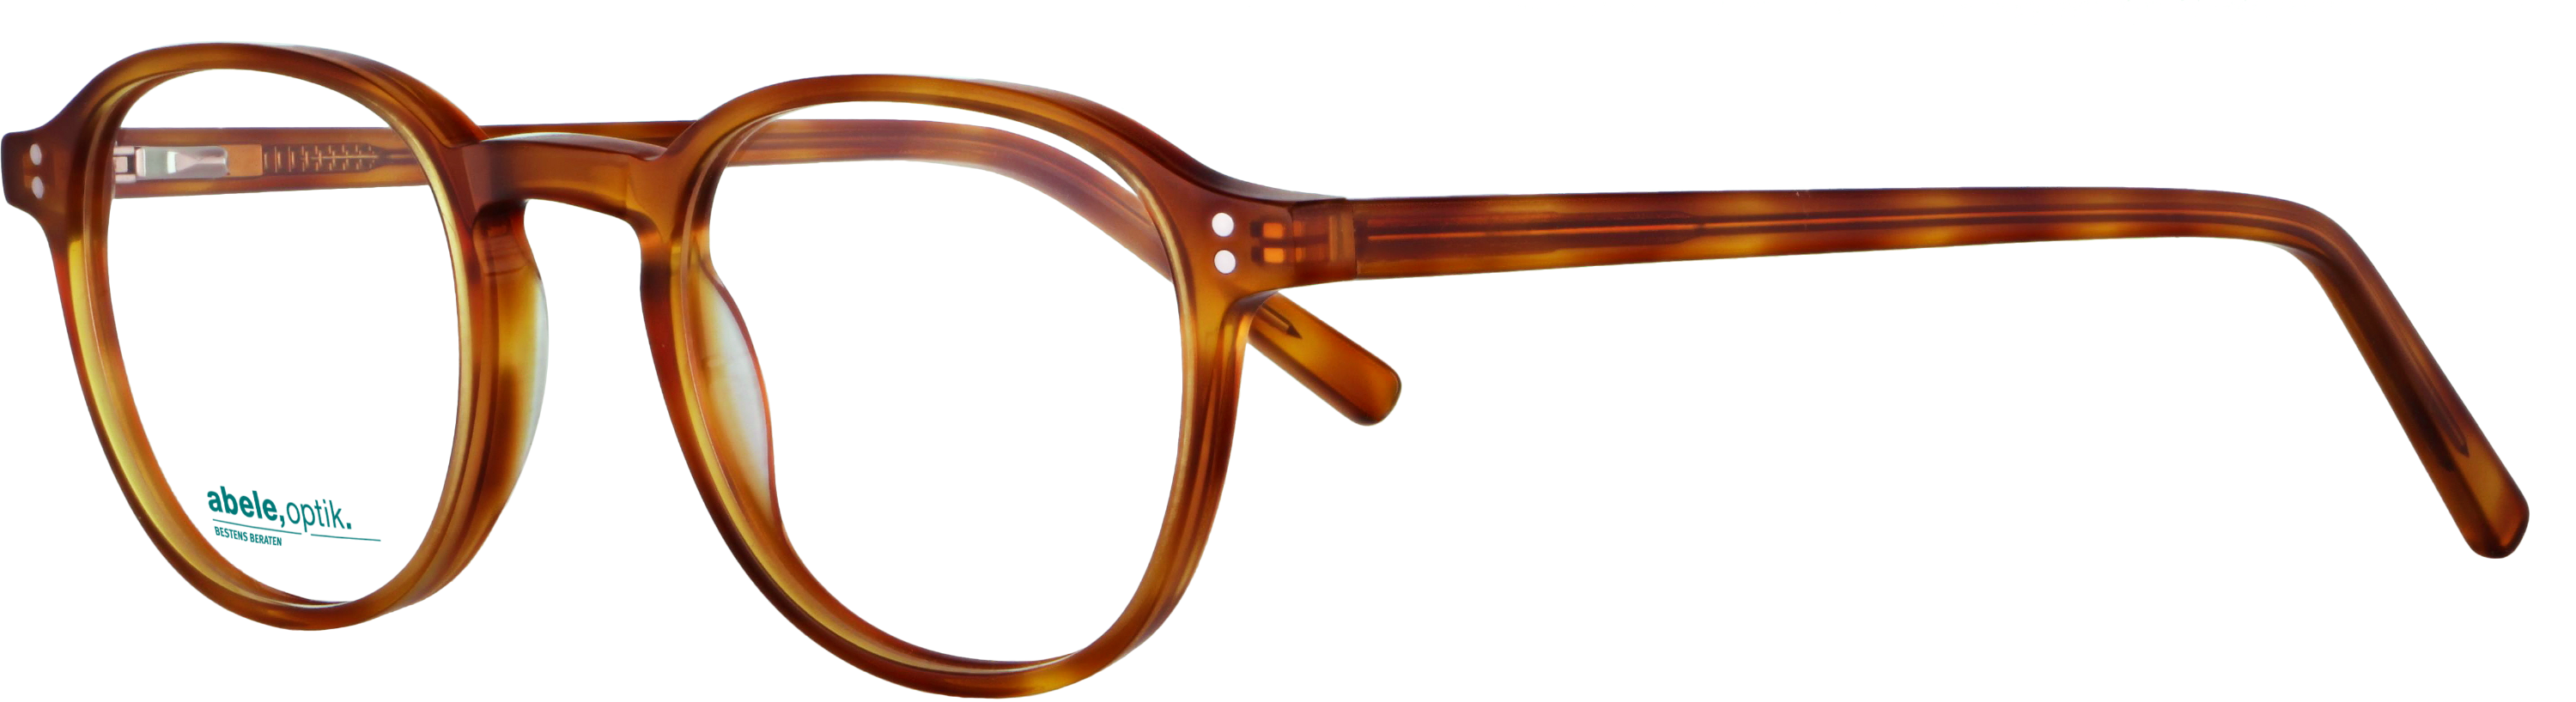 Das Bild zeigt die Korrektionsbrille 142001 von der Marke Abele Optik in havanna hell.